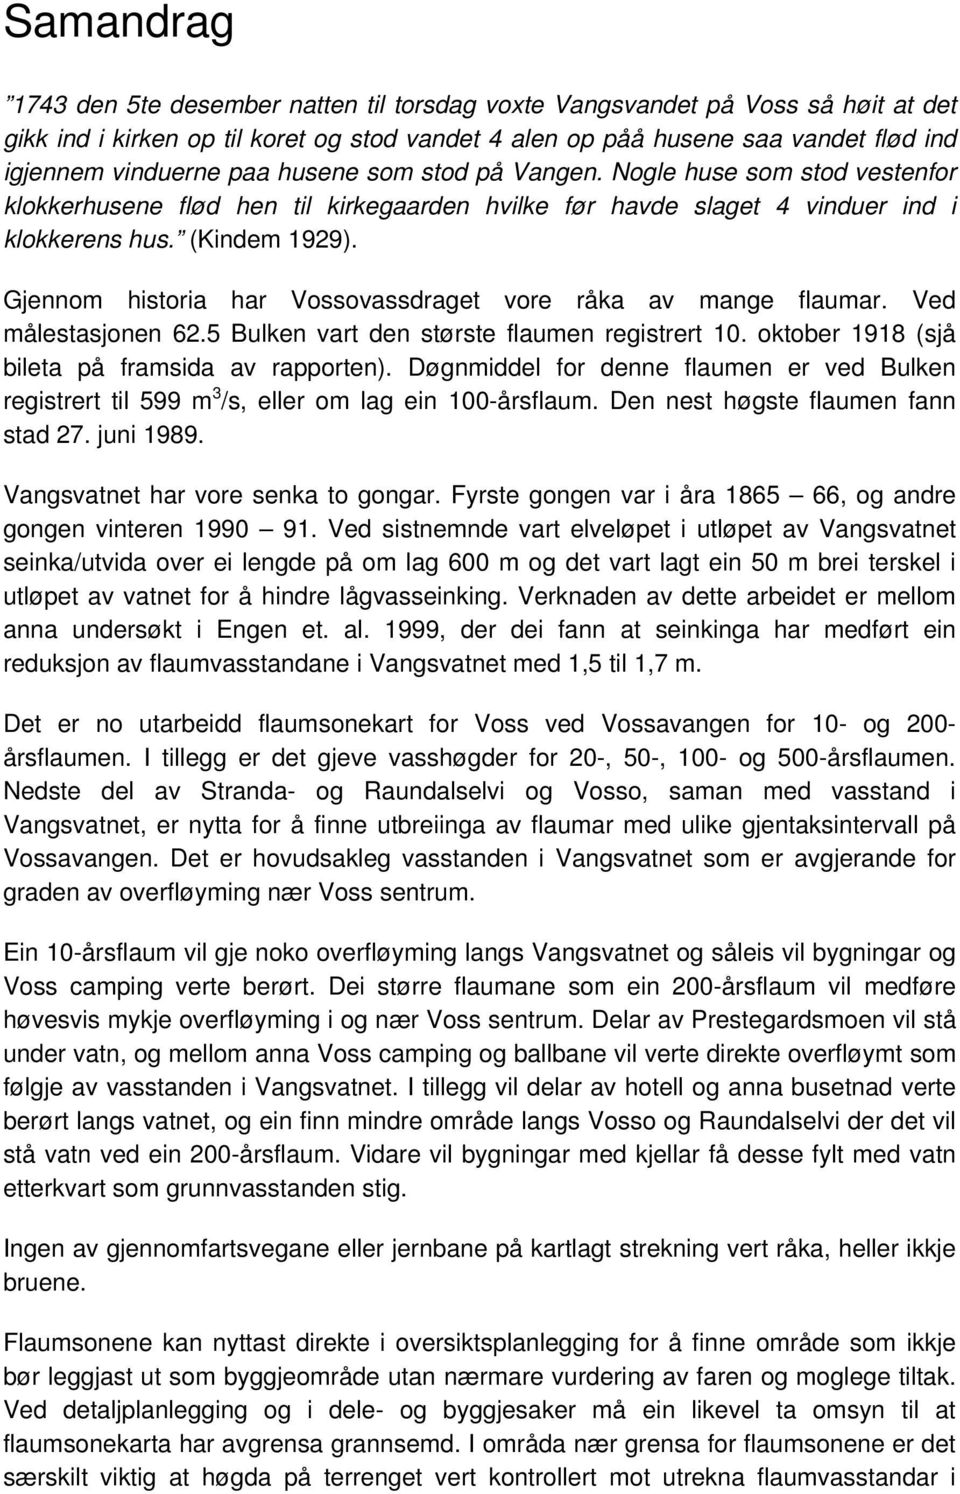 Gjennom historia har Vossovassdraget vore råka av mange flaumar. Ved målestasjonen 62.5 Bulken vart den største flaumen registrert 10. oktober 1918 (sjå bileta på framsida av rapporten).